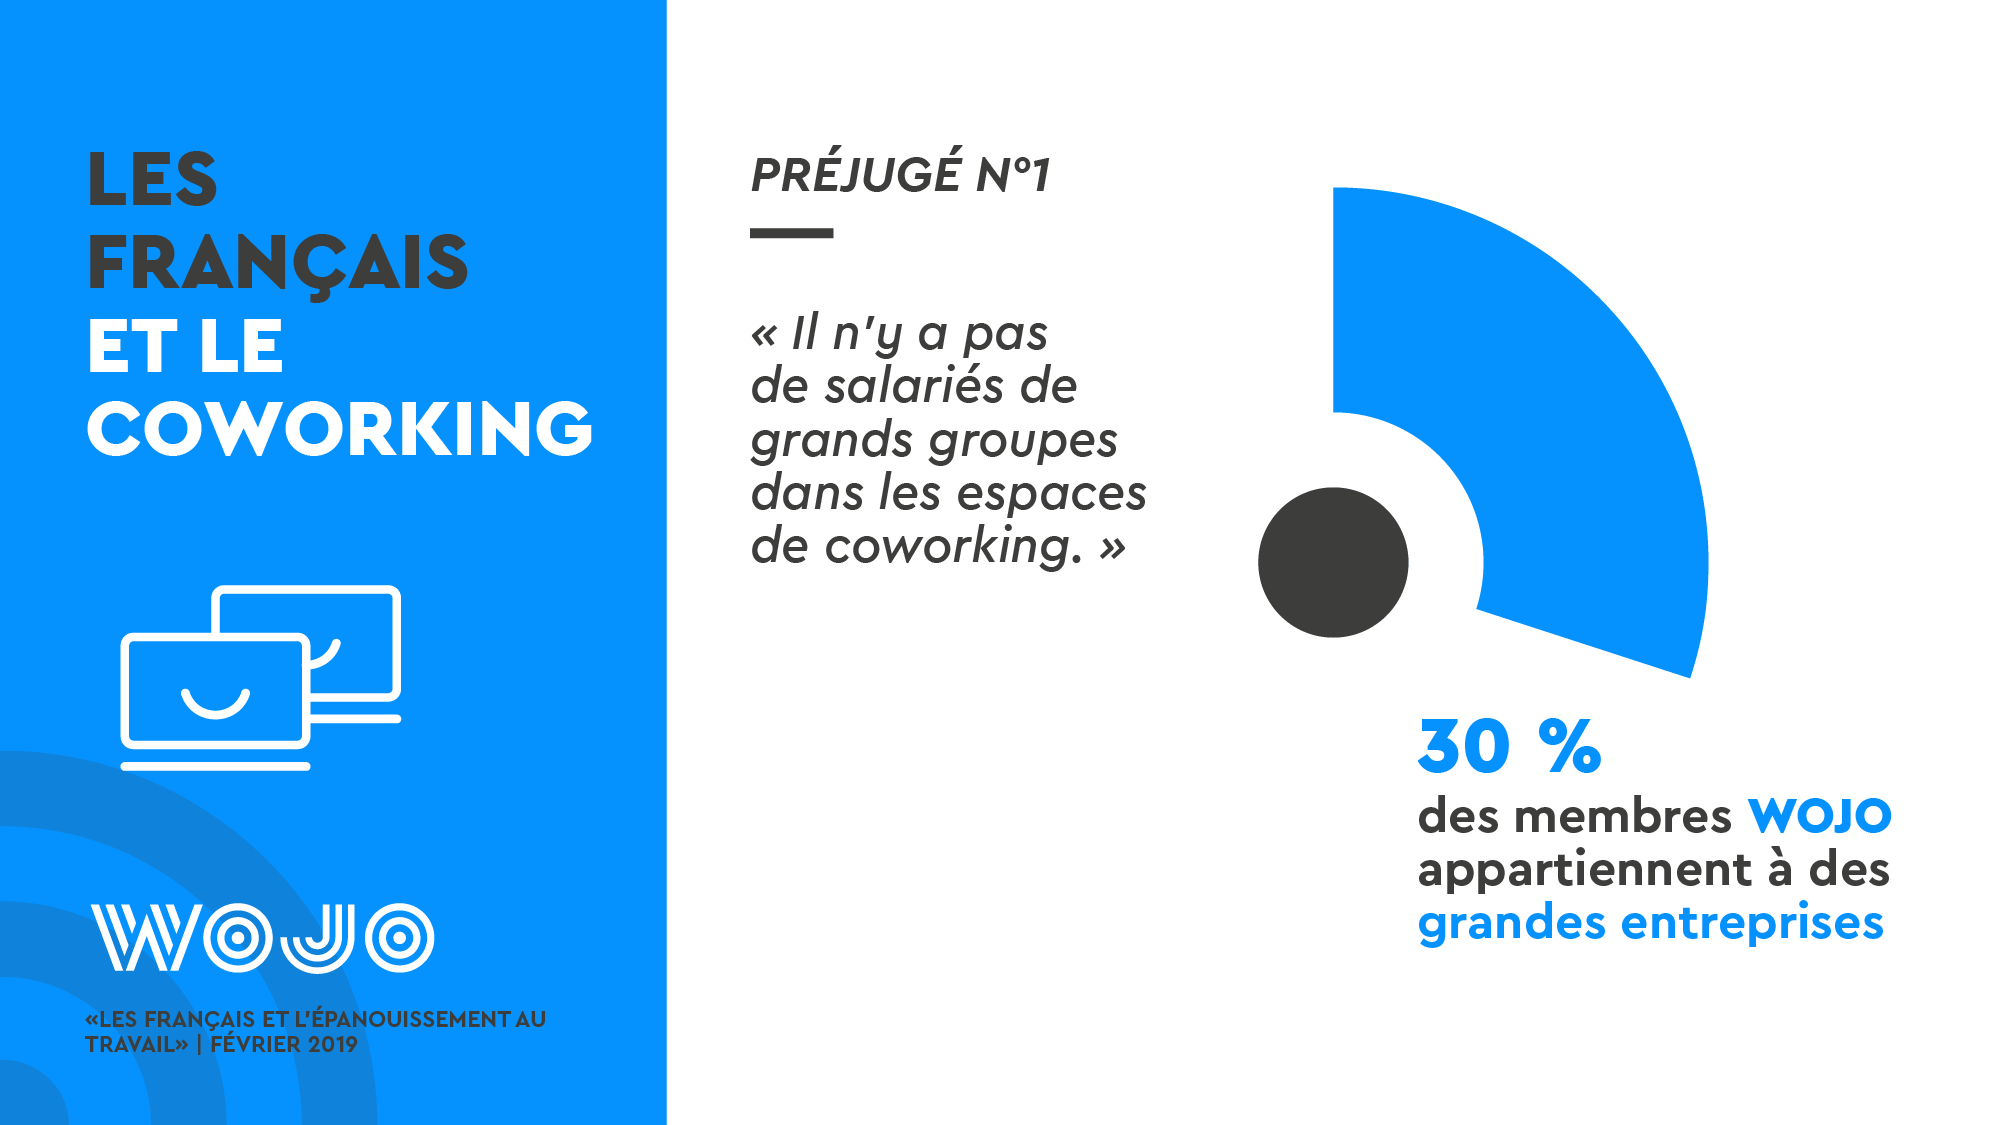 Les Français et l'épanouissement au travail - Enquête WOJO - Coworking © Data visualisation : ÉCLAIRAGE PUBLIC